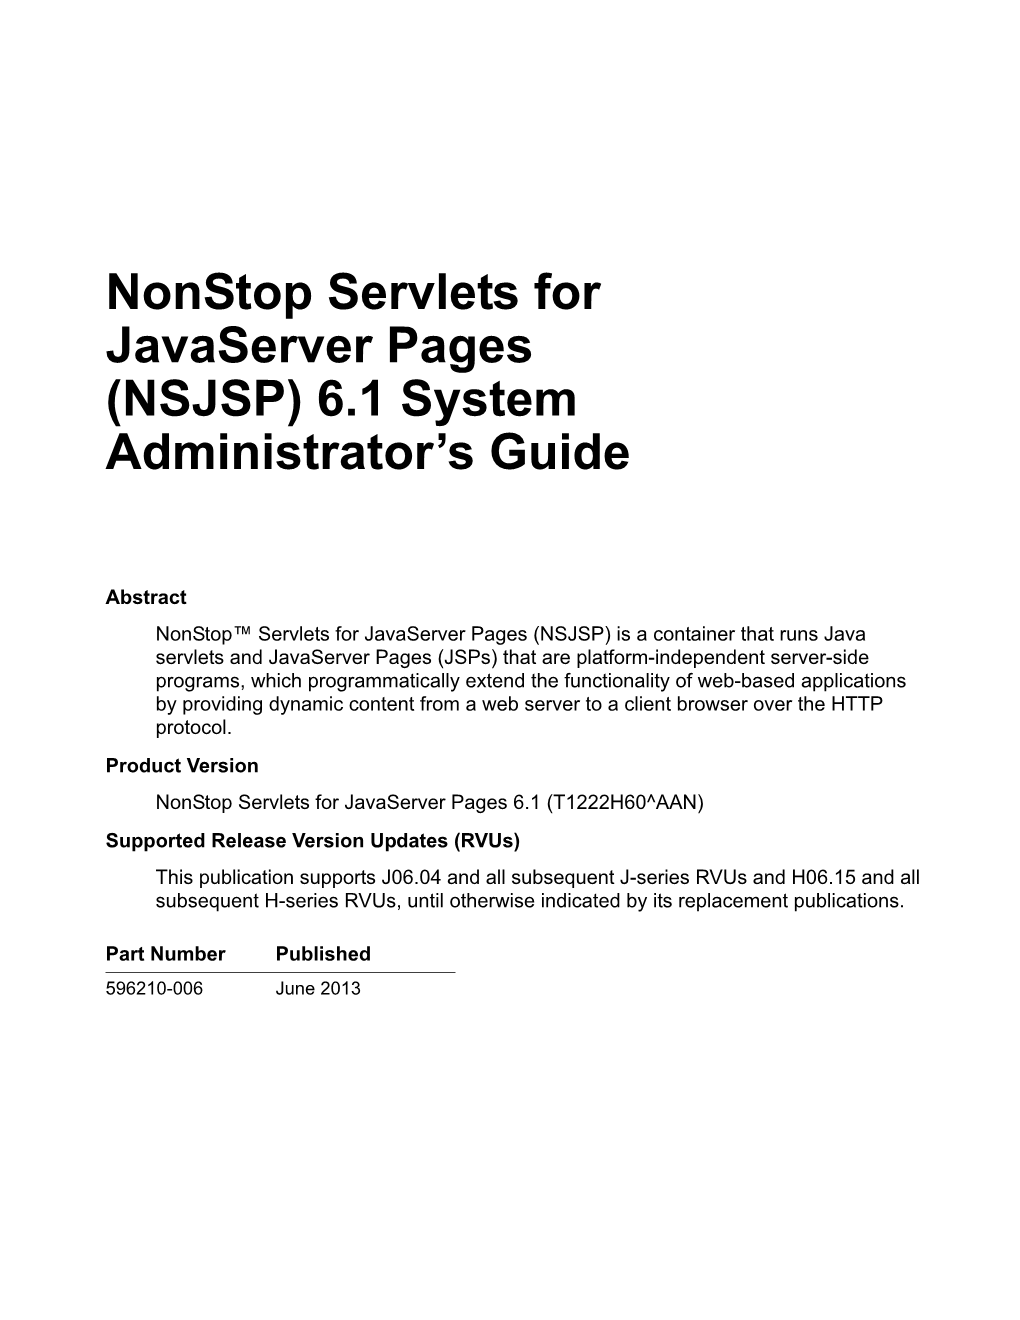 Nonstop Servlets for Javaserver Pages (NSJSP) 6.1 System Administrator’S Guide